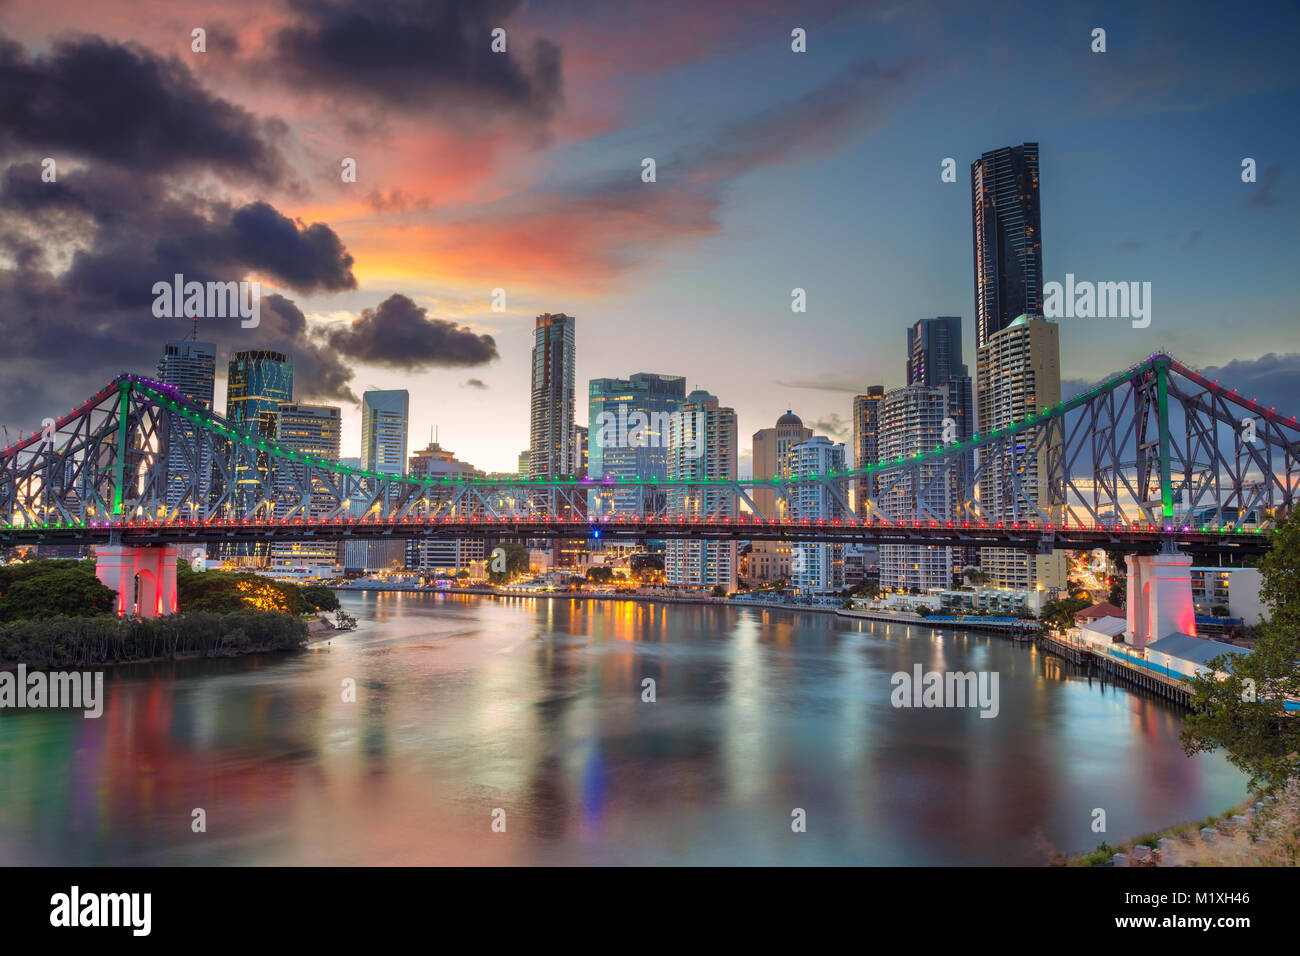 Brisbane. Cityscape immagine della skyline di Brisbane, Australia con Story Bridge durante il tramonto spettacolare. Foto Stock